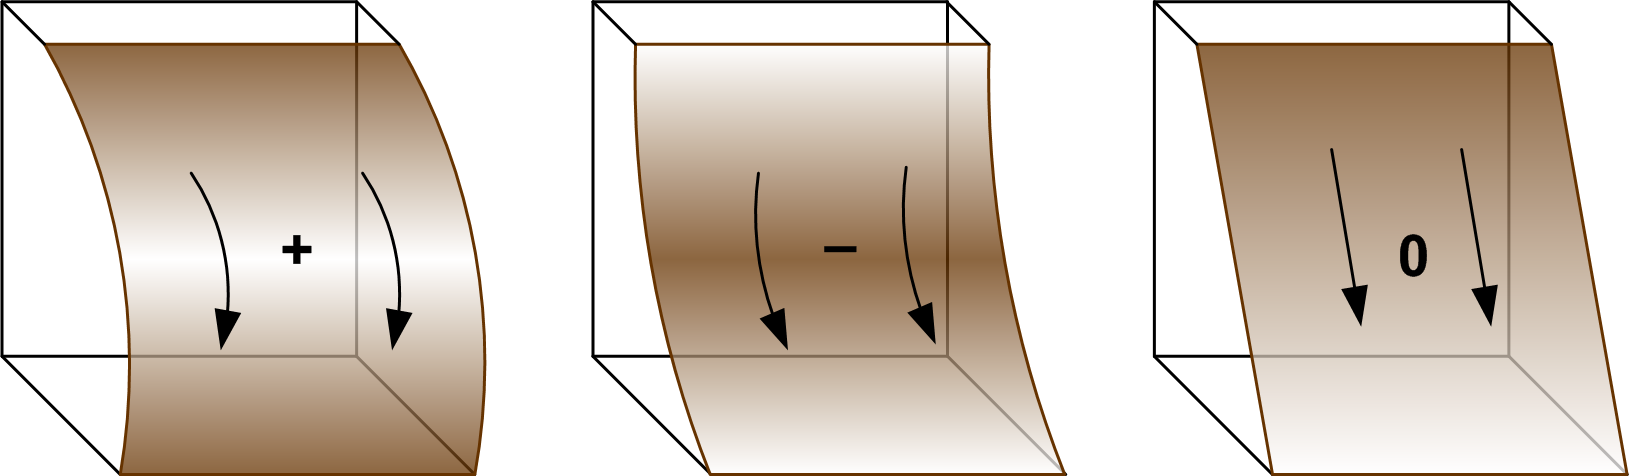 Рис. 12 Профильная кривизна параллельна направлению максимального уклона, характеризует кривизну линии тока в вертикальной плоскости